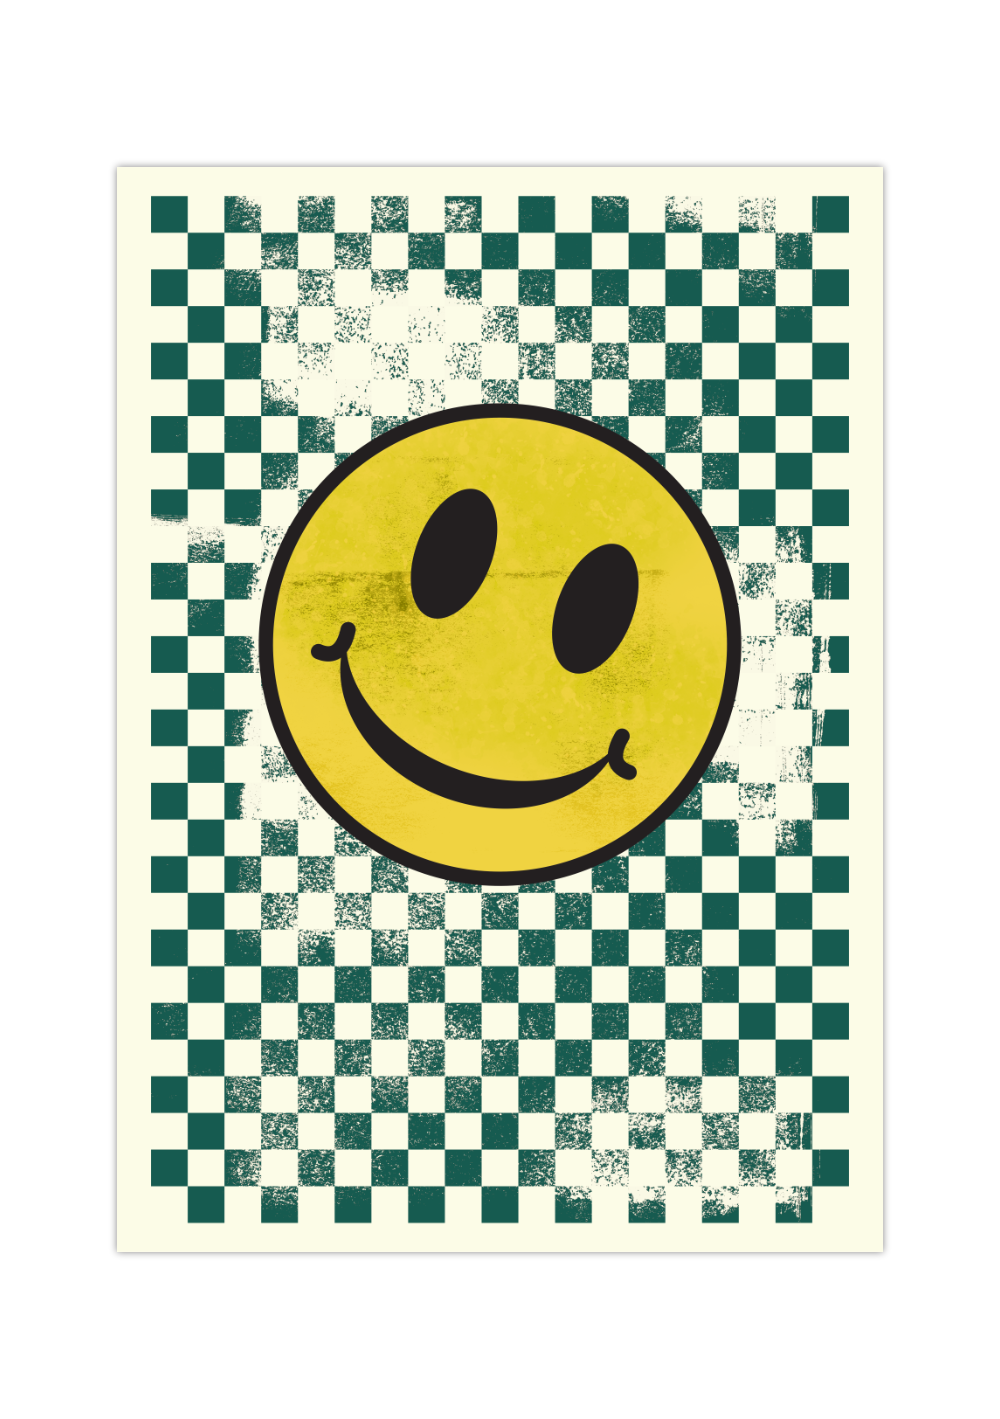 Dieses Poster zeigt im modernen Stil ein gelbes Smiley Gesicht mit grünen Quadraten im Hintergrund. Die perfekte Wanddeko für moderne Einrichtungsstile,